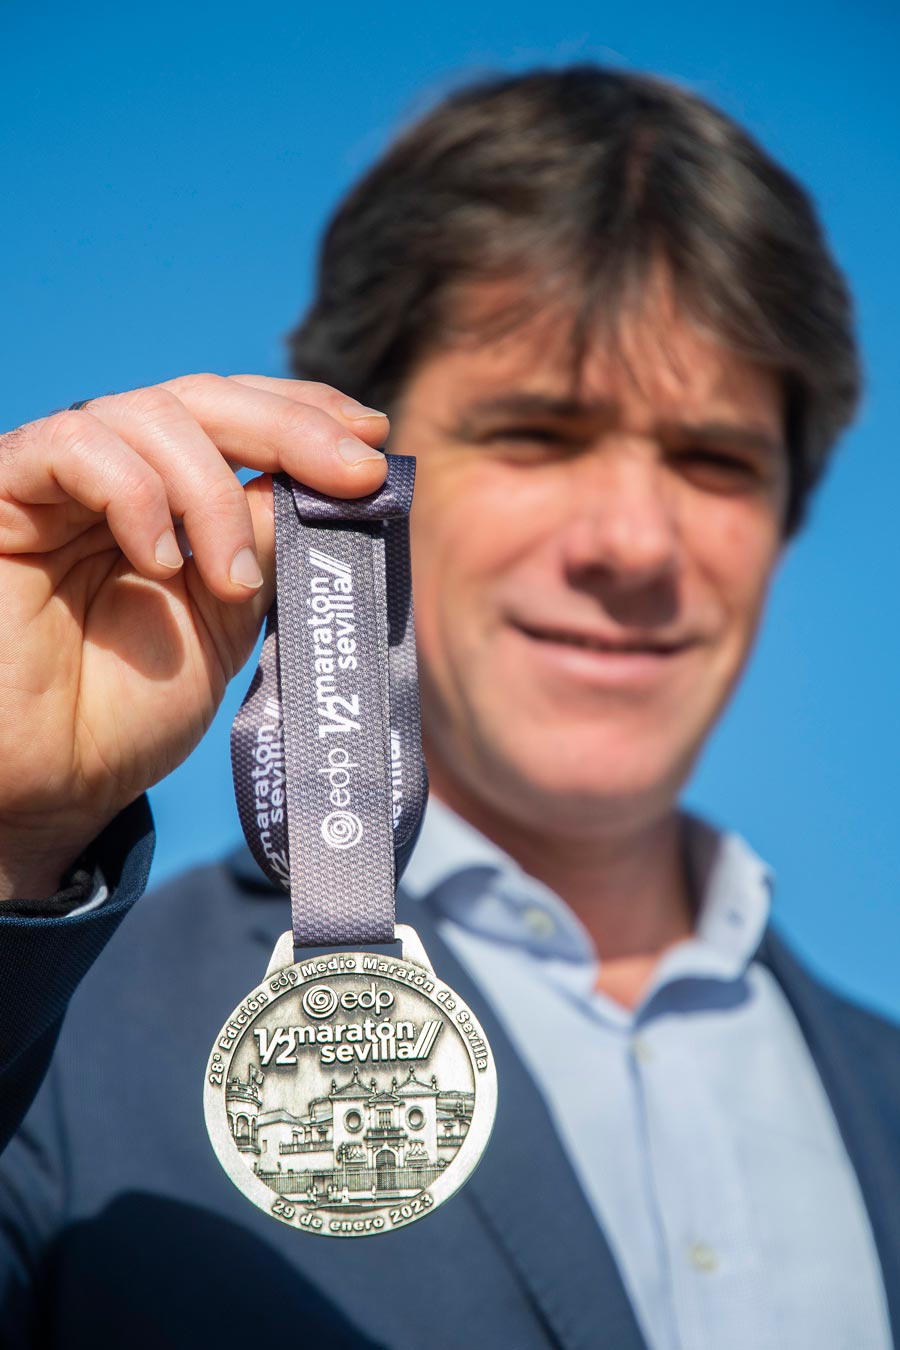 El EDP Medio Maratón de Sevilla presenta su medalla oficial para los ‘finishers’ 2023